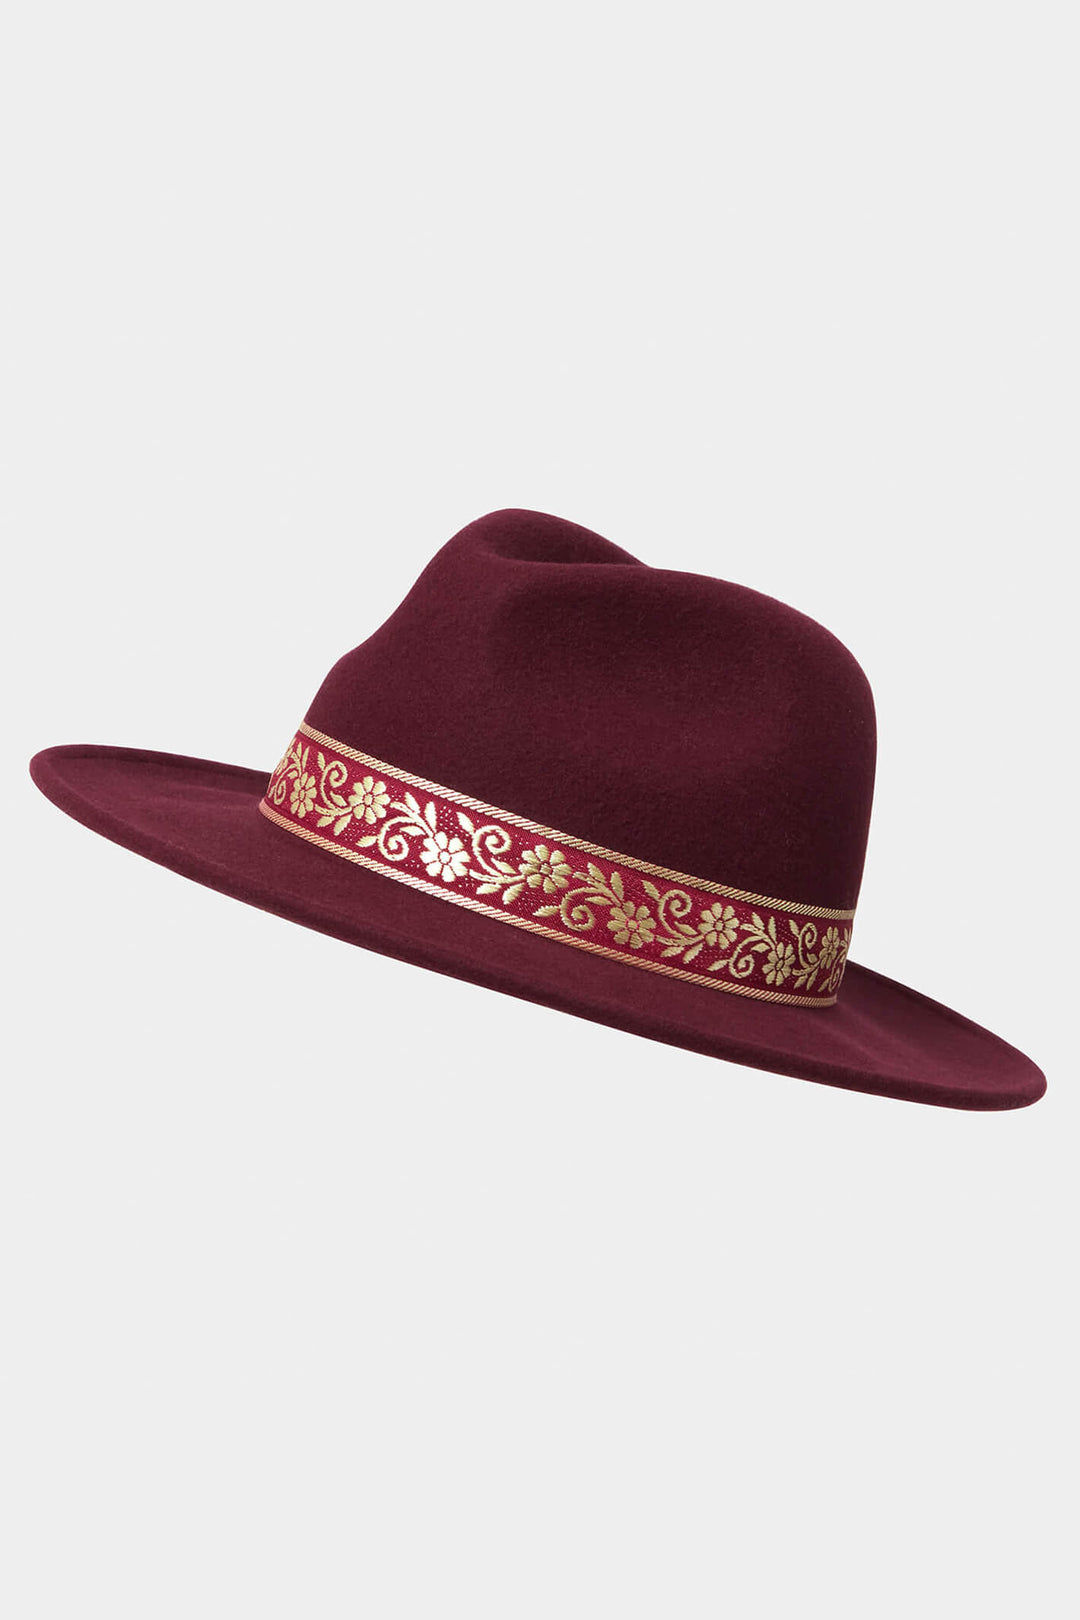 Joe Browns HB363 Burgundy Red Keep It Sleek Wool Fedora Hat - Experience Boutique